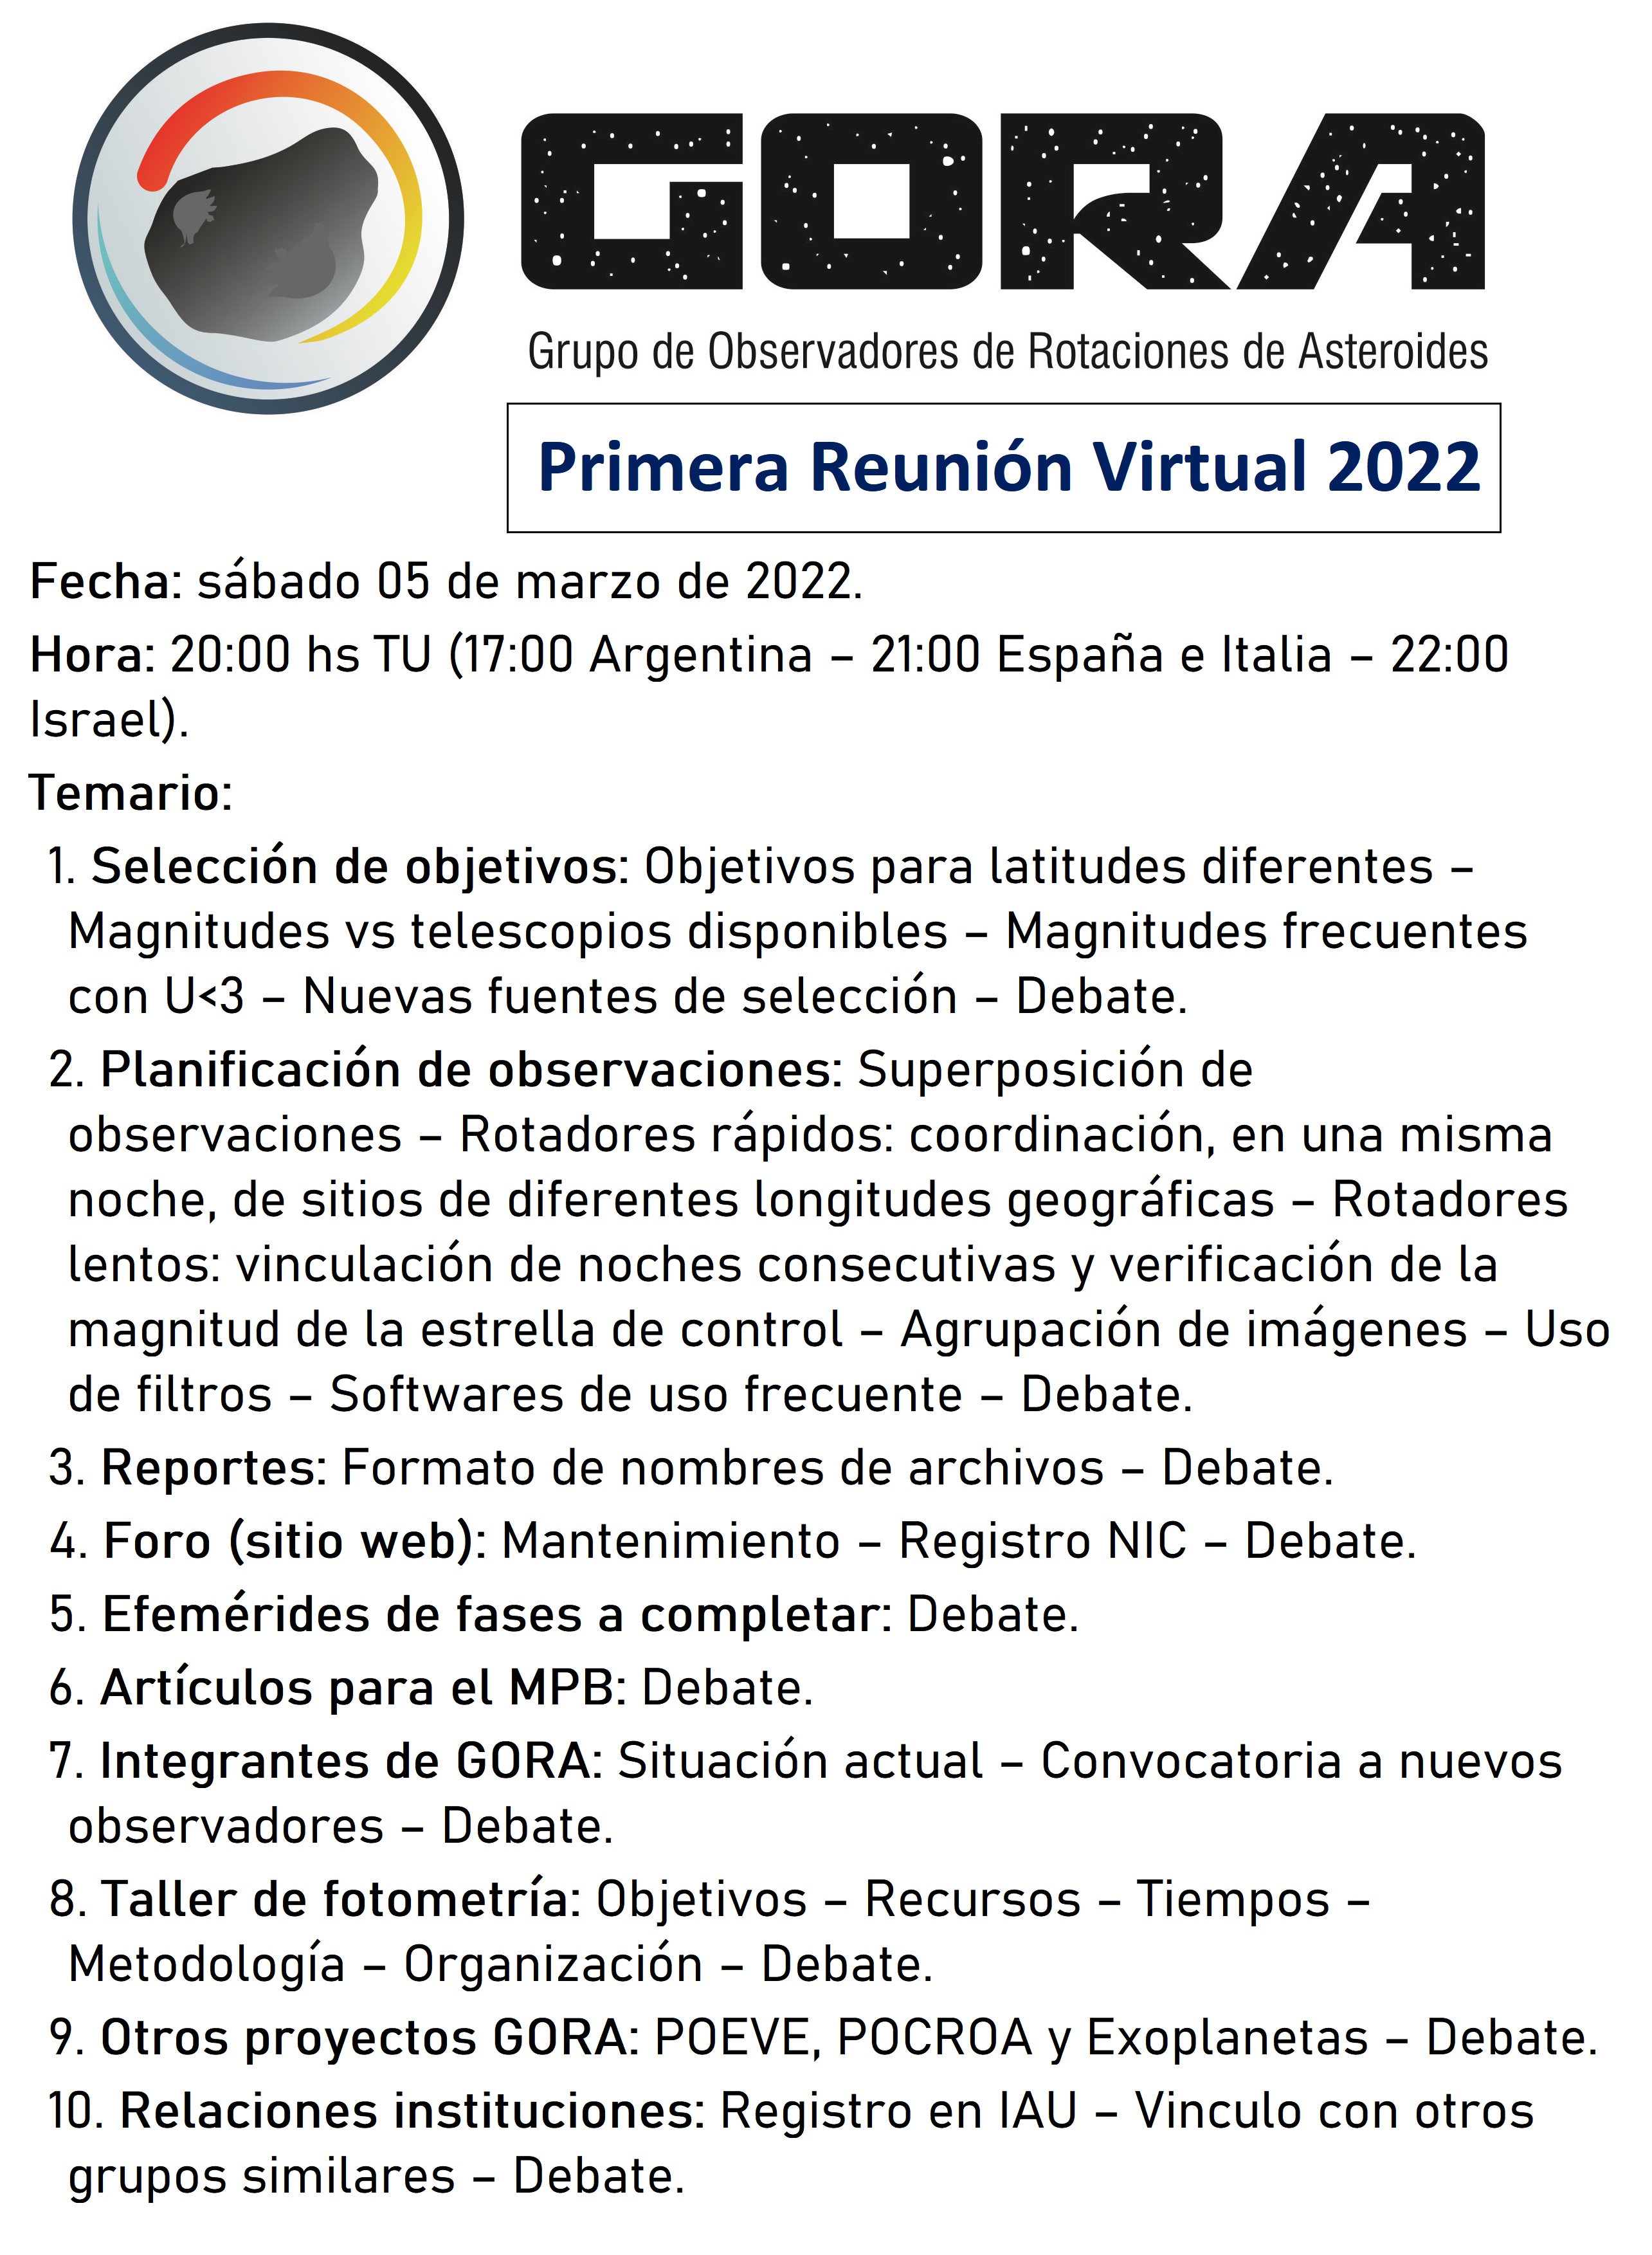 1ra reunion 2022.jpg